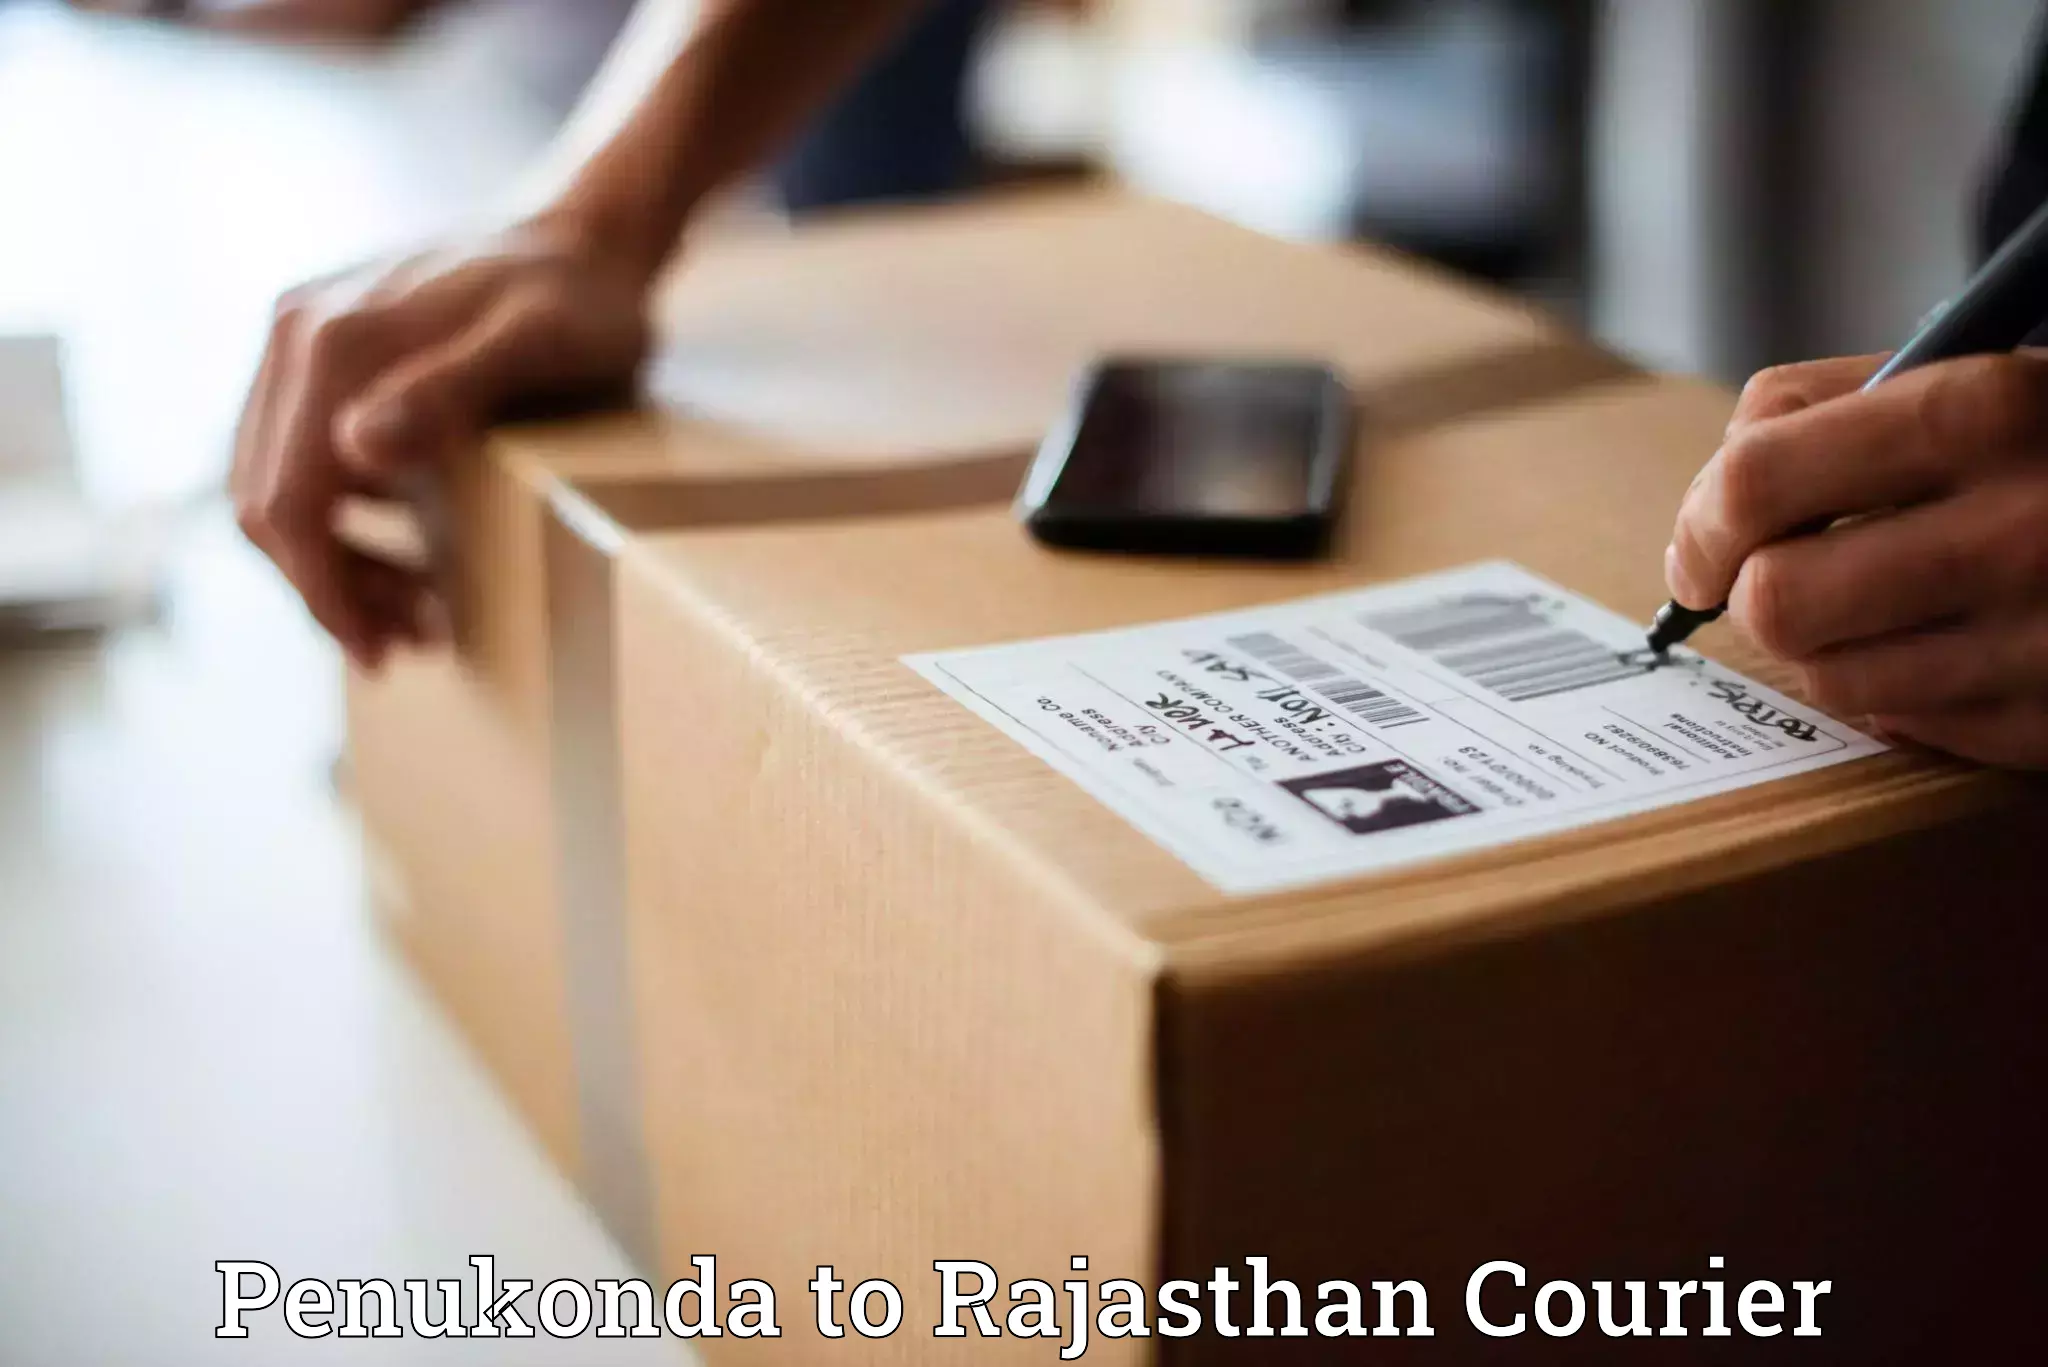 Quick parcel dispatch Penukonda to Bhilwara